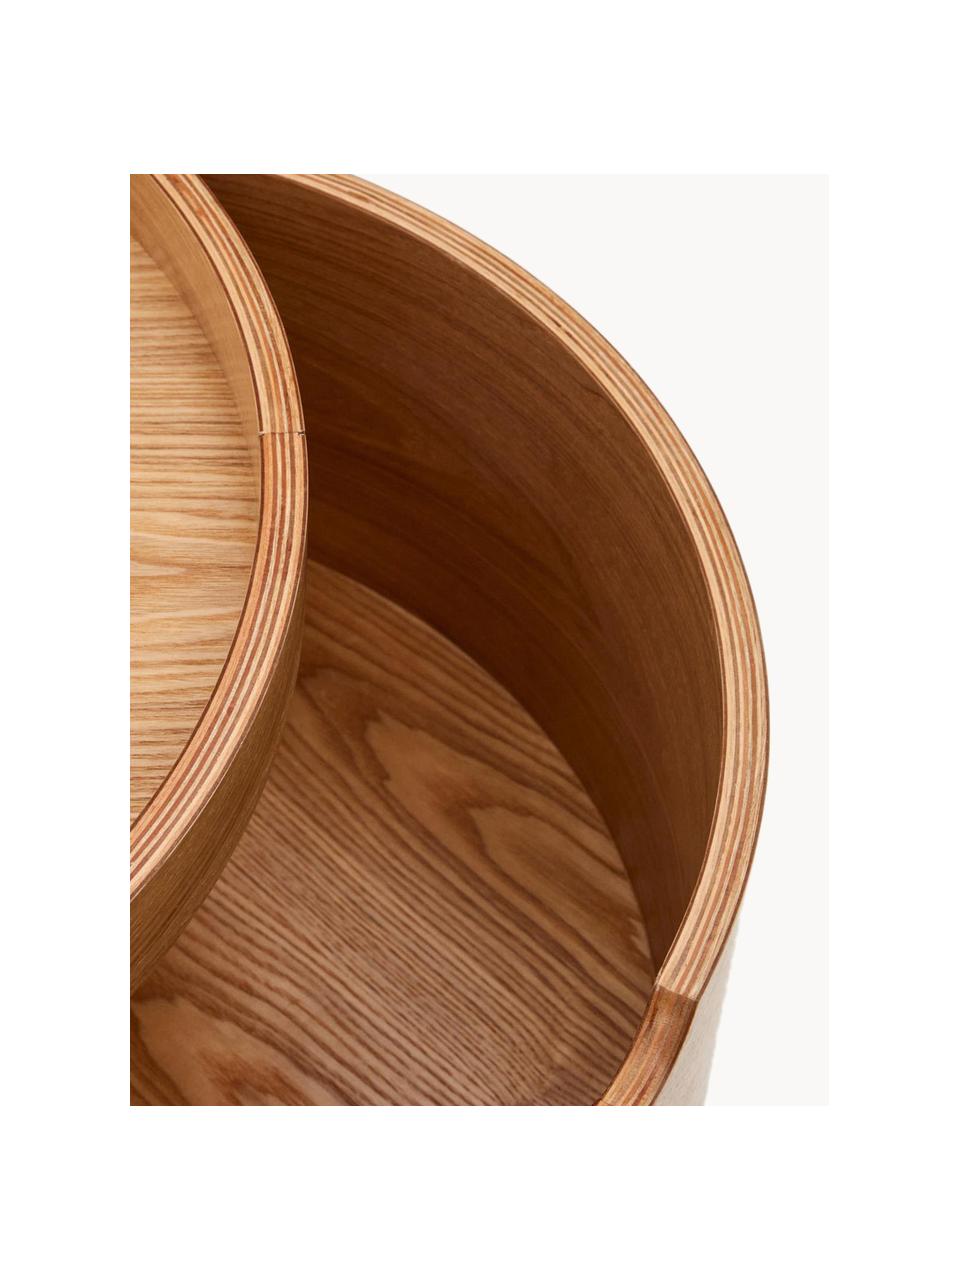 Okrúhly nočný stolík s úložným priestorom Octavia, Eukalyptové drevo, MDF-doska strednej hustoty, Eukalyptové drevo, Š 55 x V 45 cm